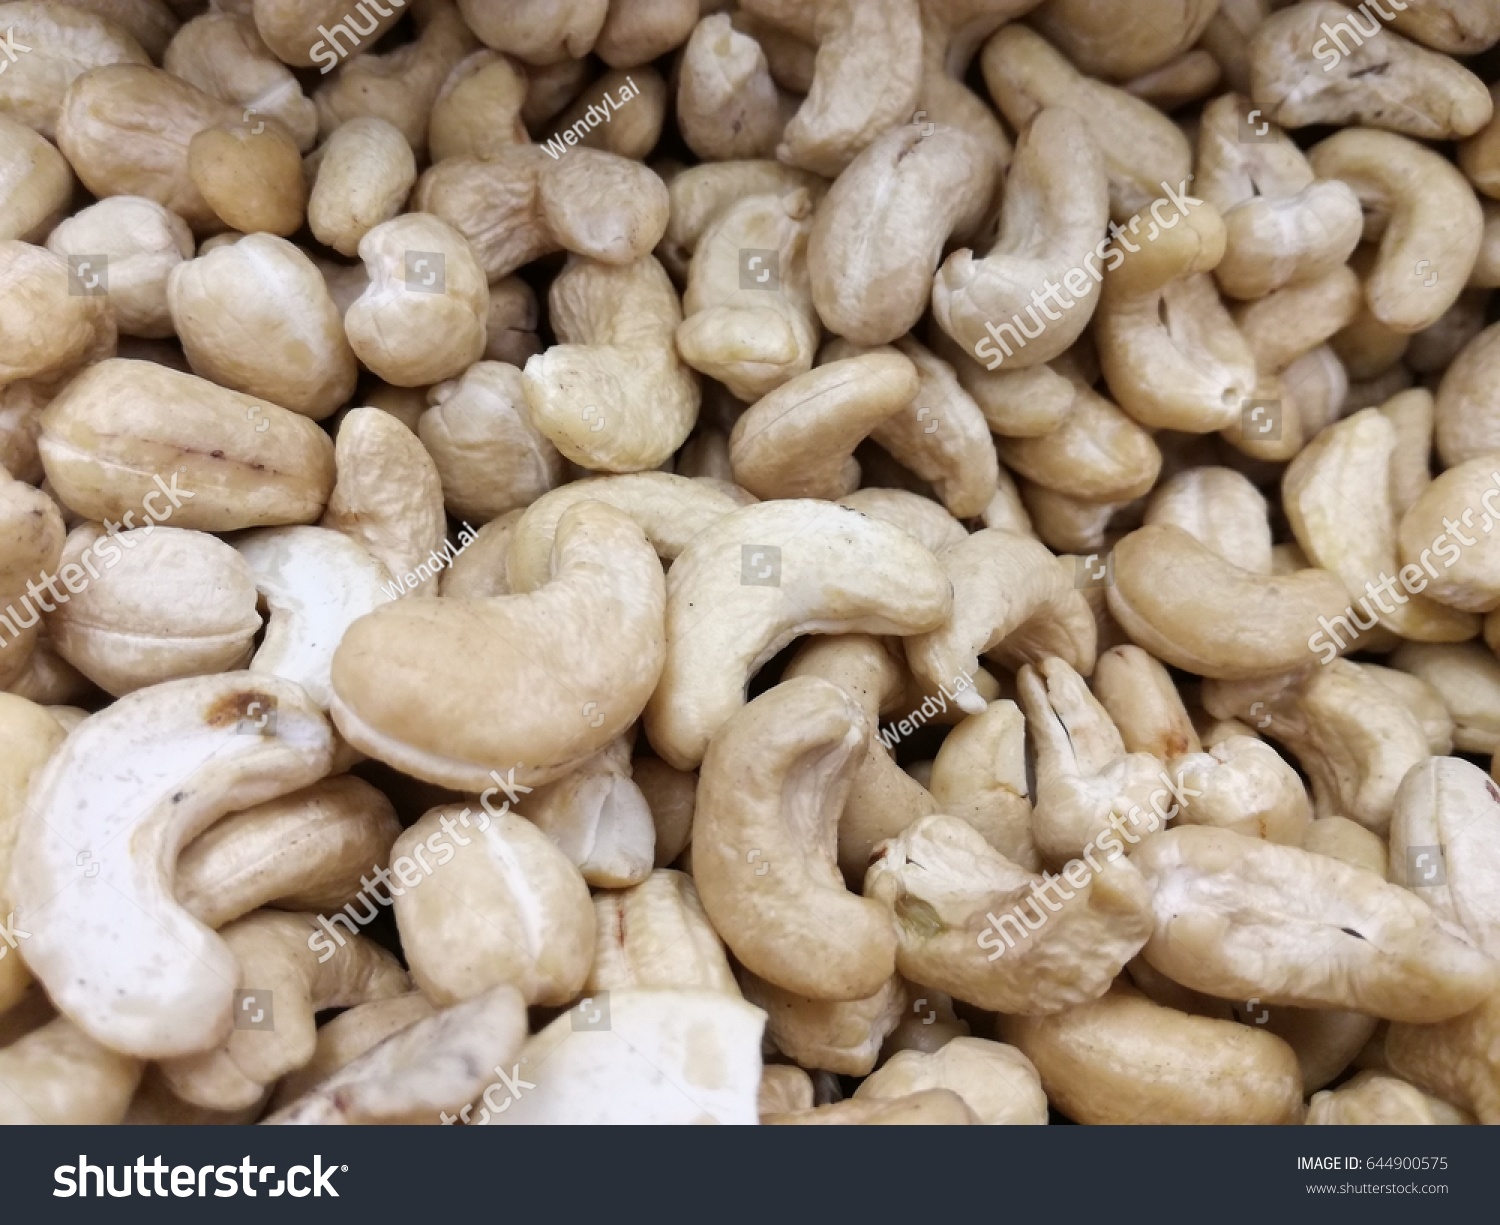 raw cashew nut market